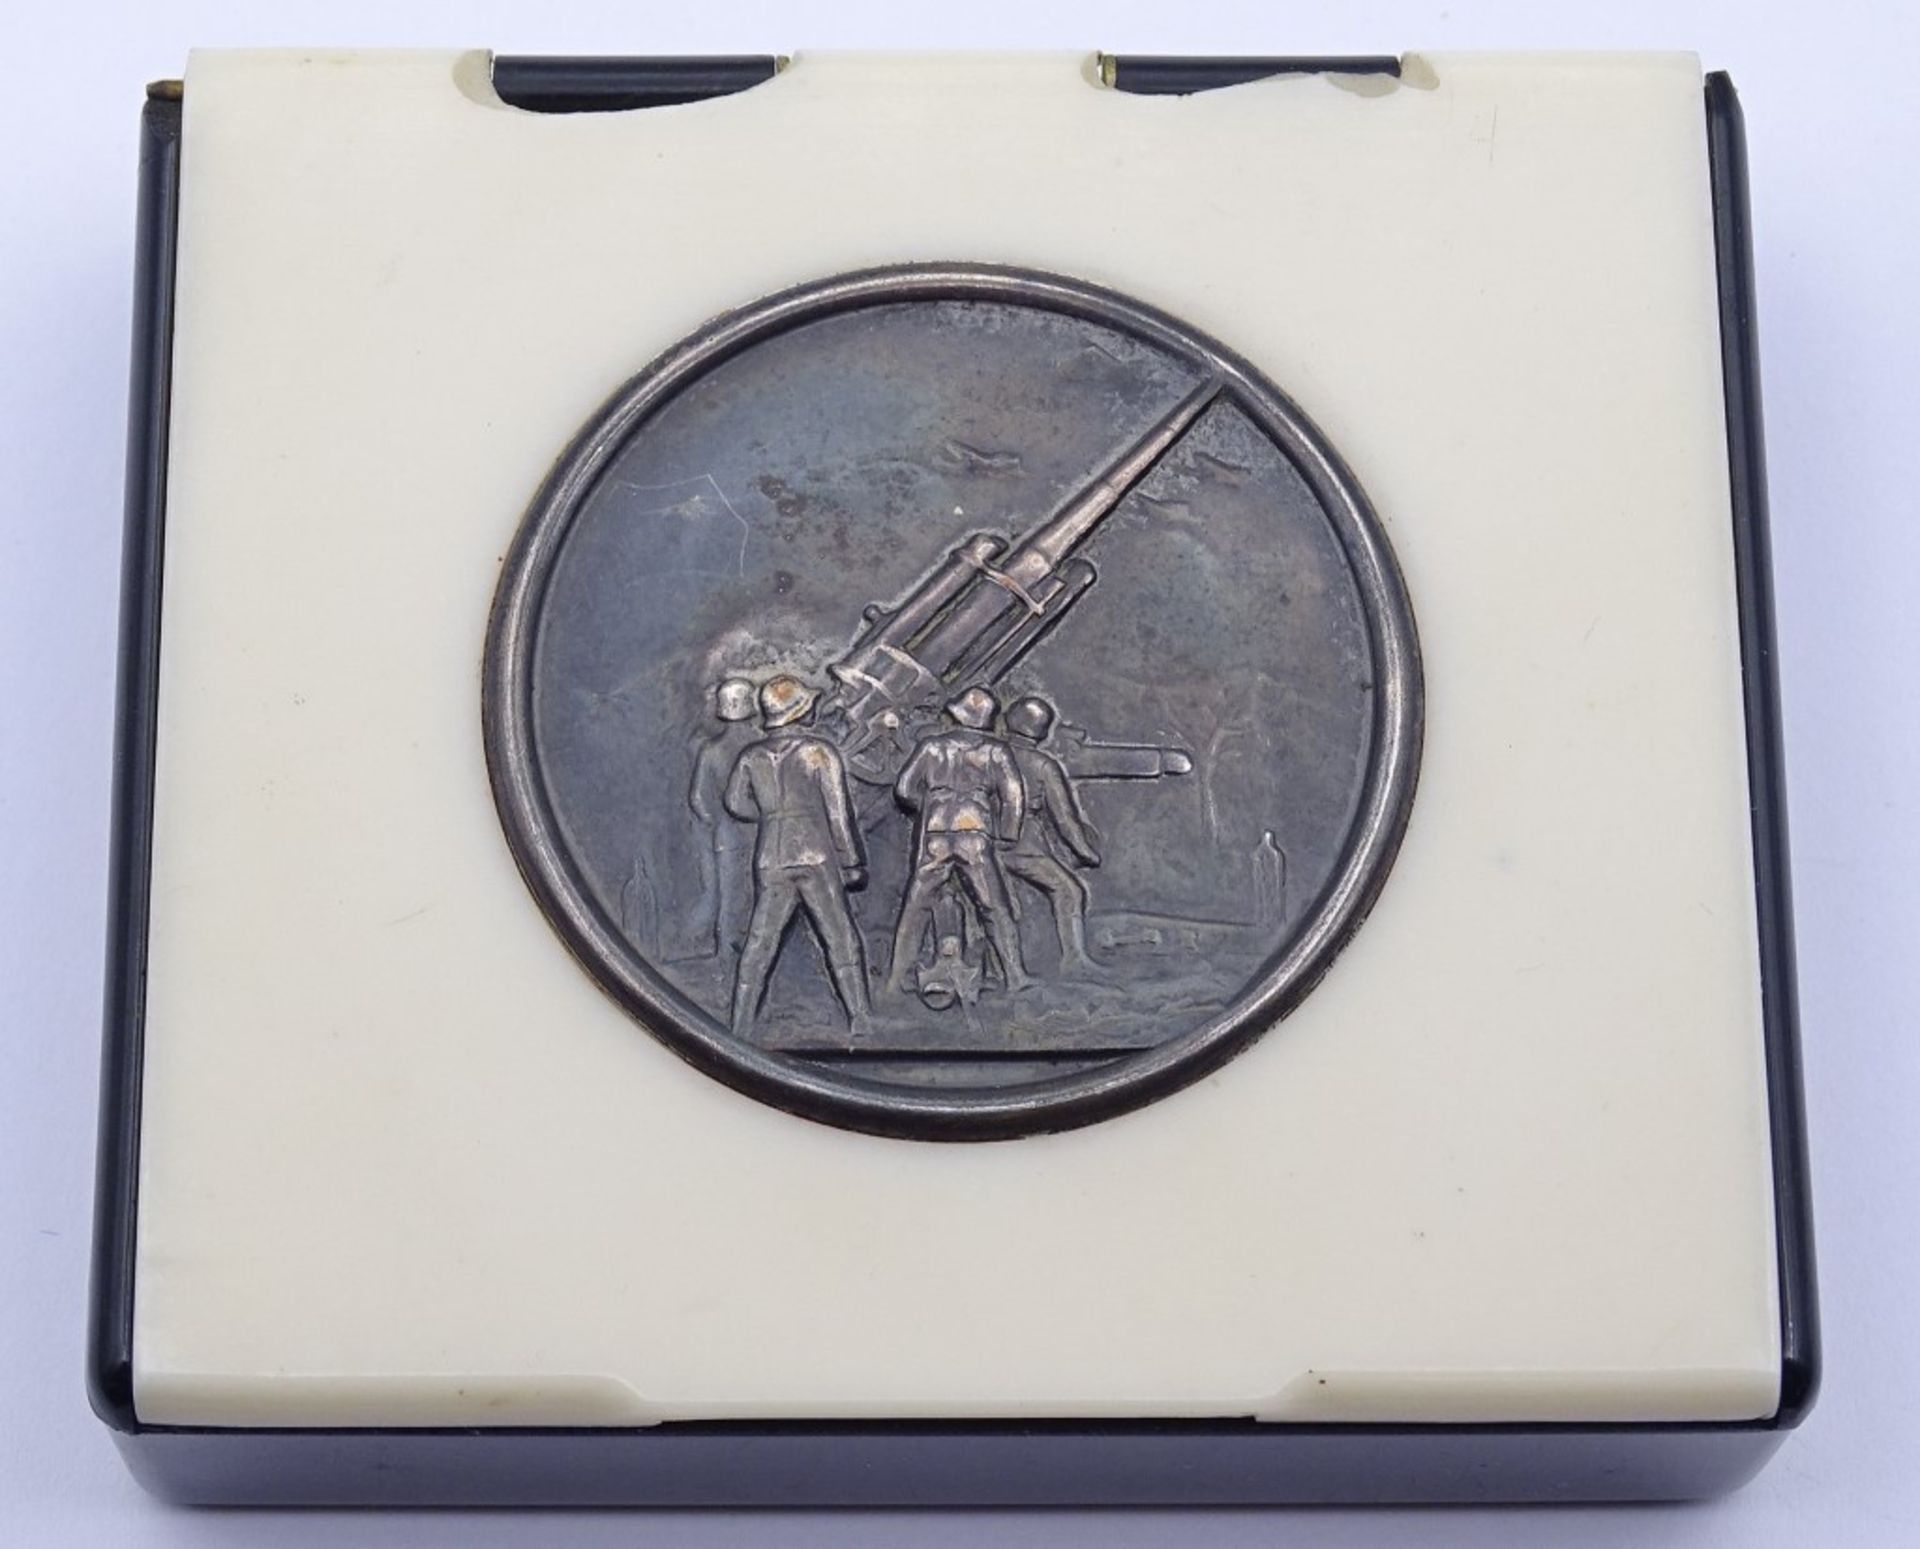 Zigarettendose aus Bakelit mit Silbermedaille "Flak" Darstellung, 7,5x6,7cm,etwas bestossen an d.